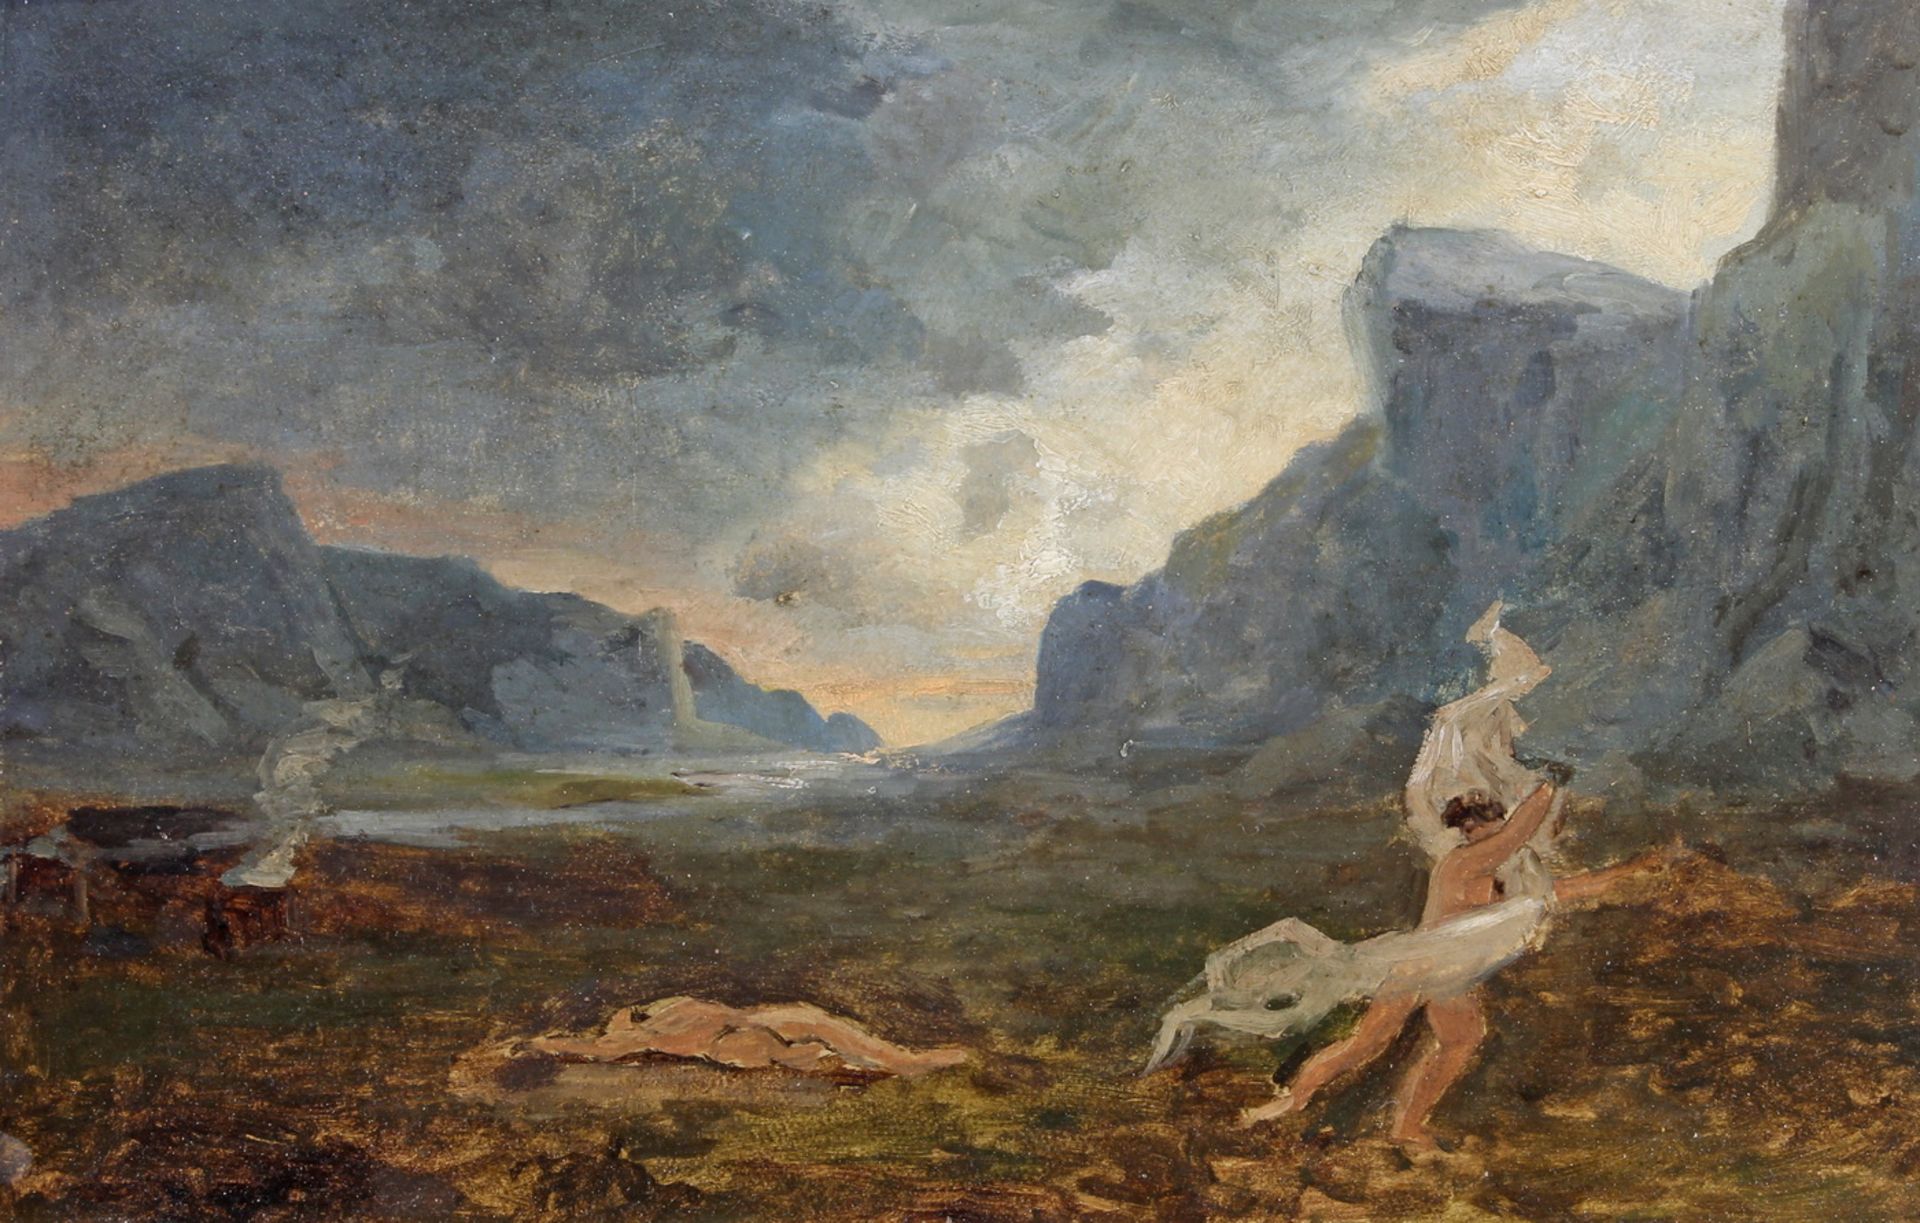 Unbekannter Maler (19. Jh.) "Mythologische oder literarische Szene", Ölstudie auf Karton, 27.5 x 4